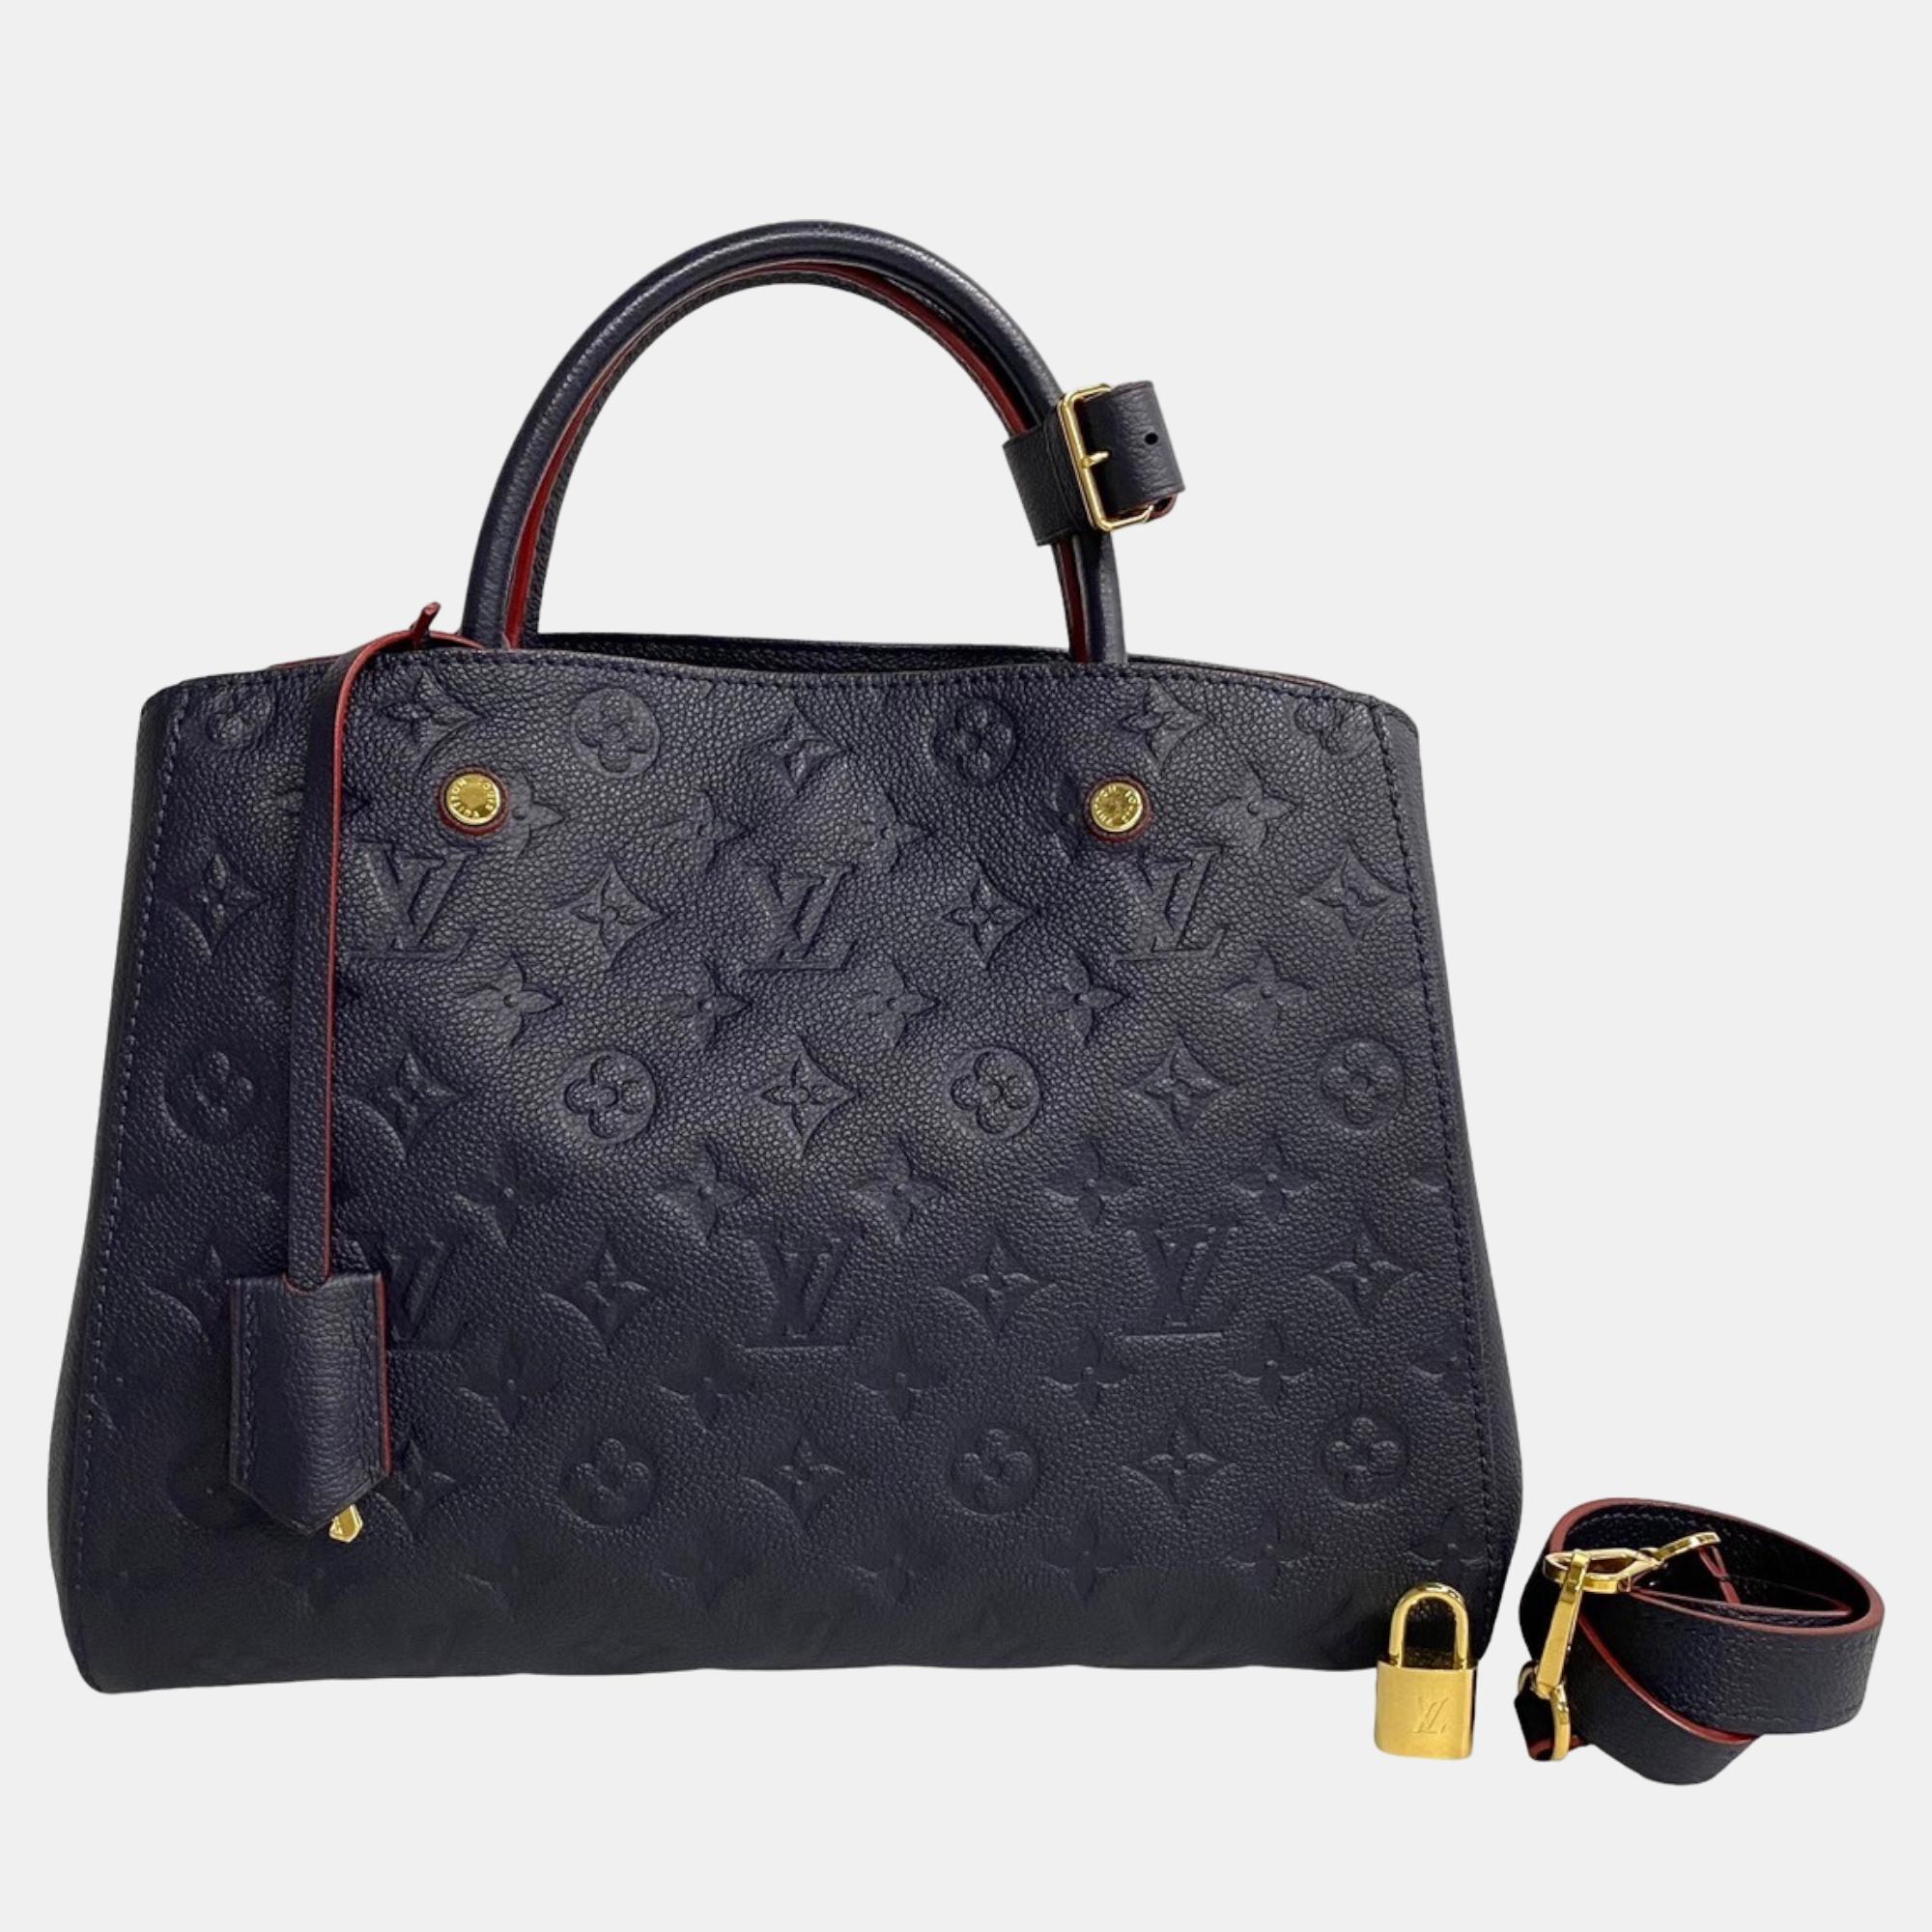 

Louis Vuitton Black Empreinte Leather MM Montaigne Satchel Bag